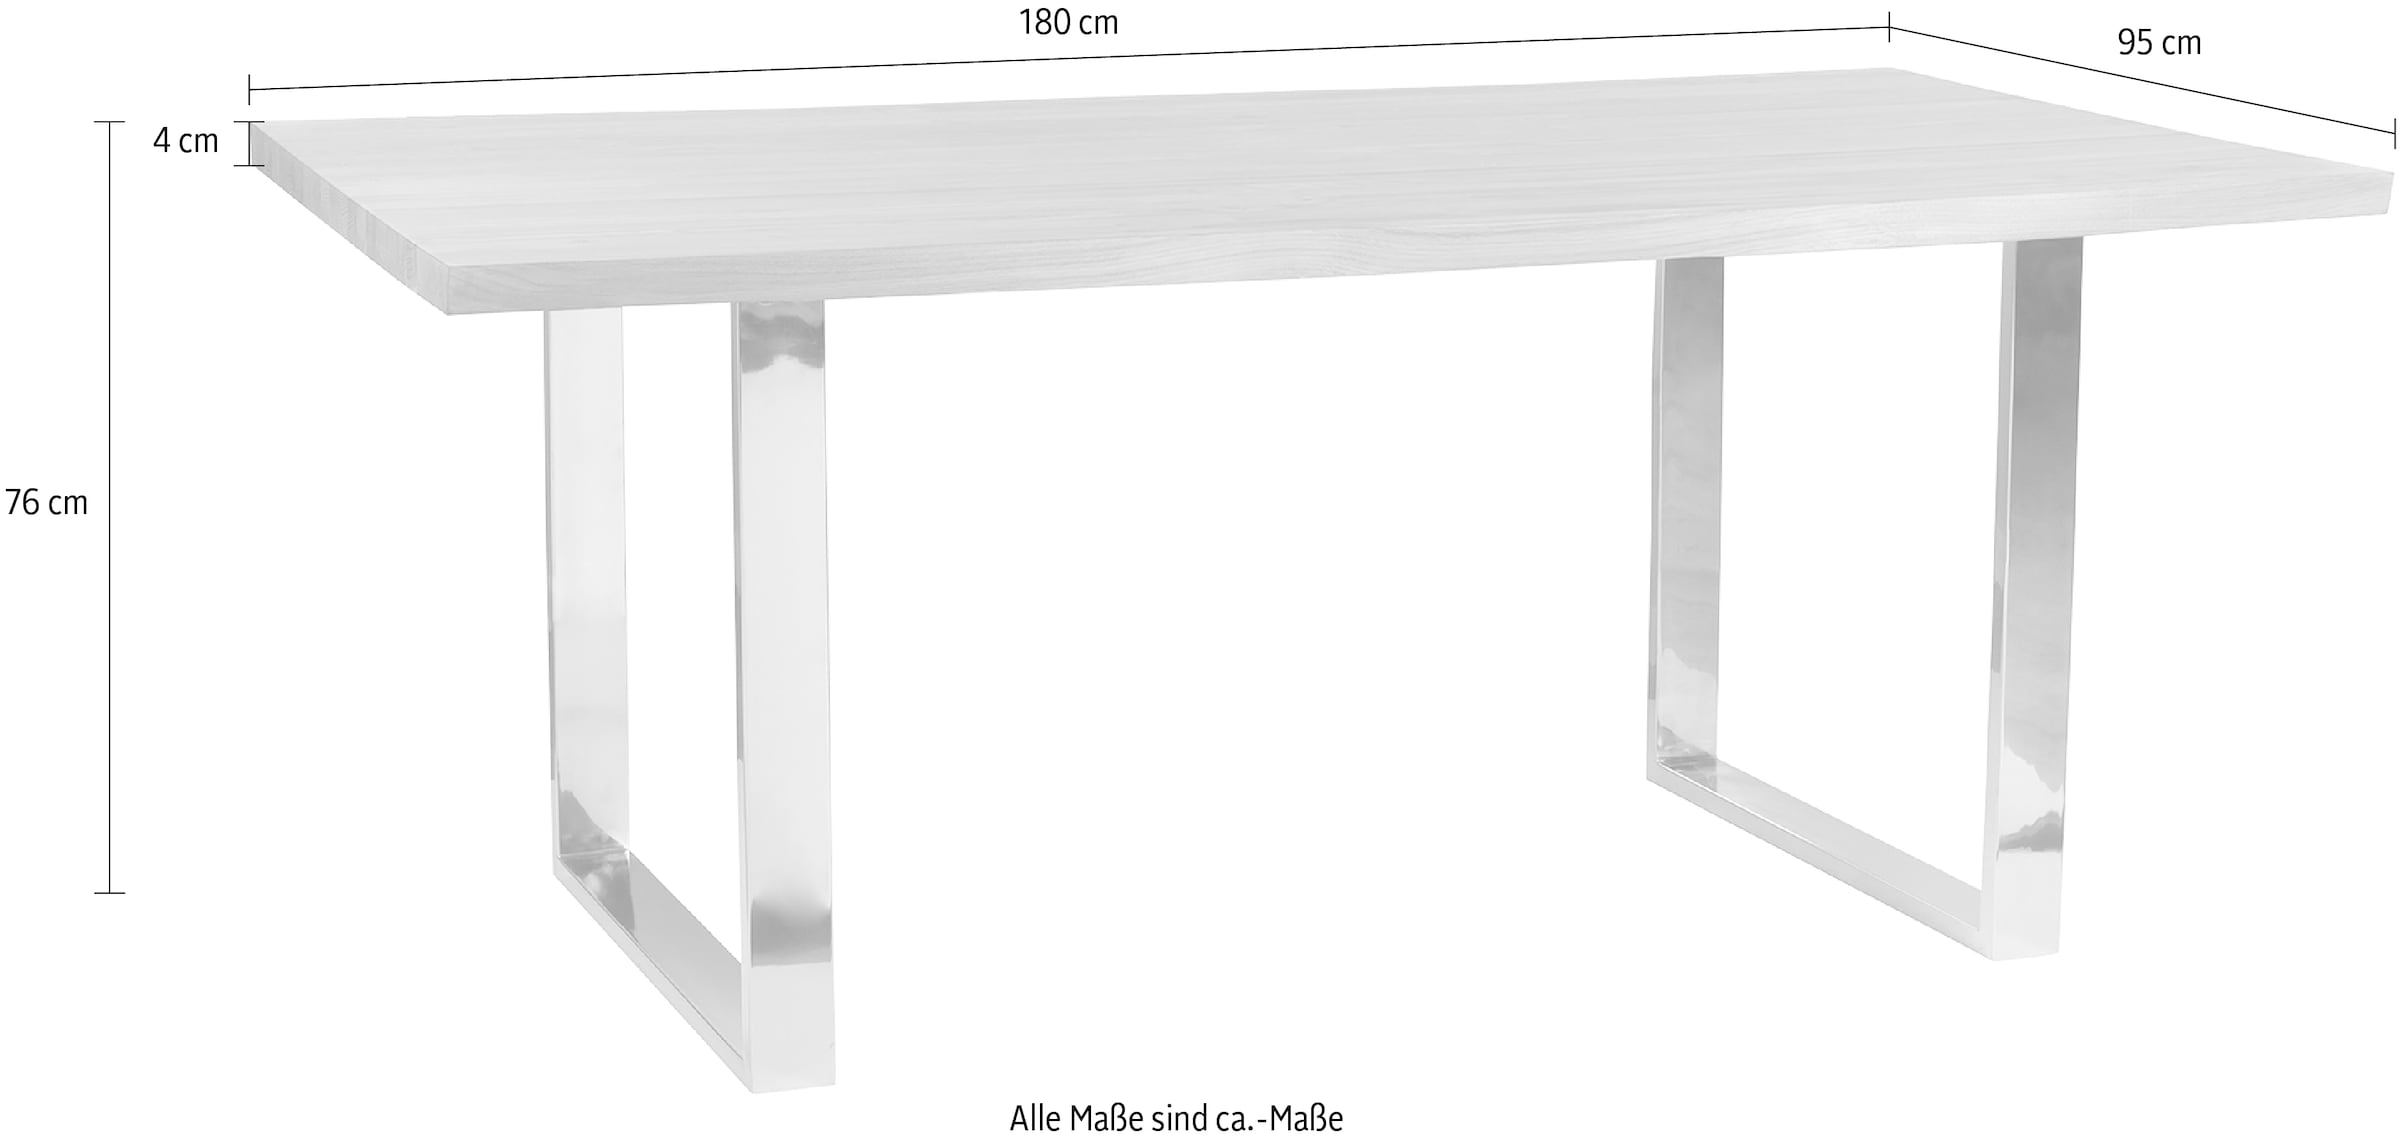 Fink Esstisch, Mit seitlich geschwungener Form, massive Tischplatte, weiß geölt